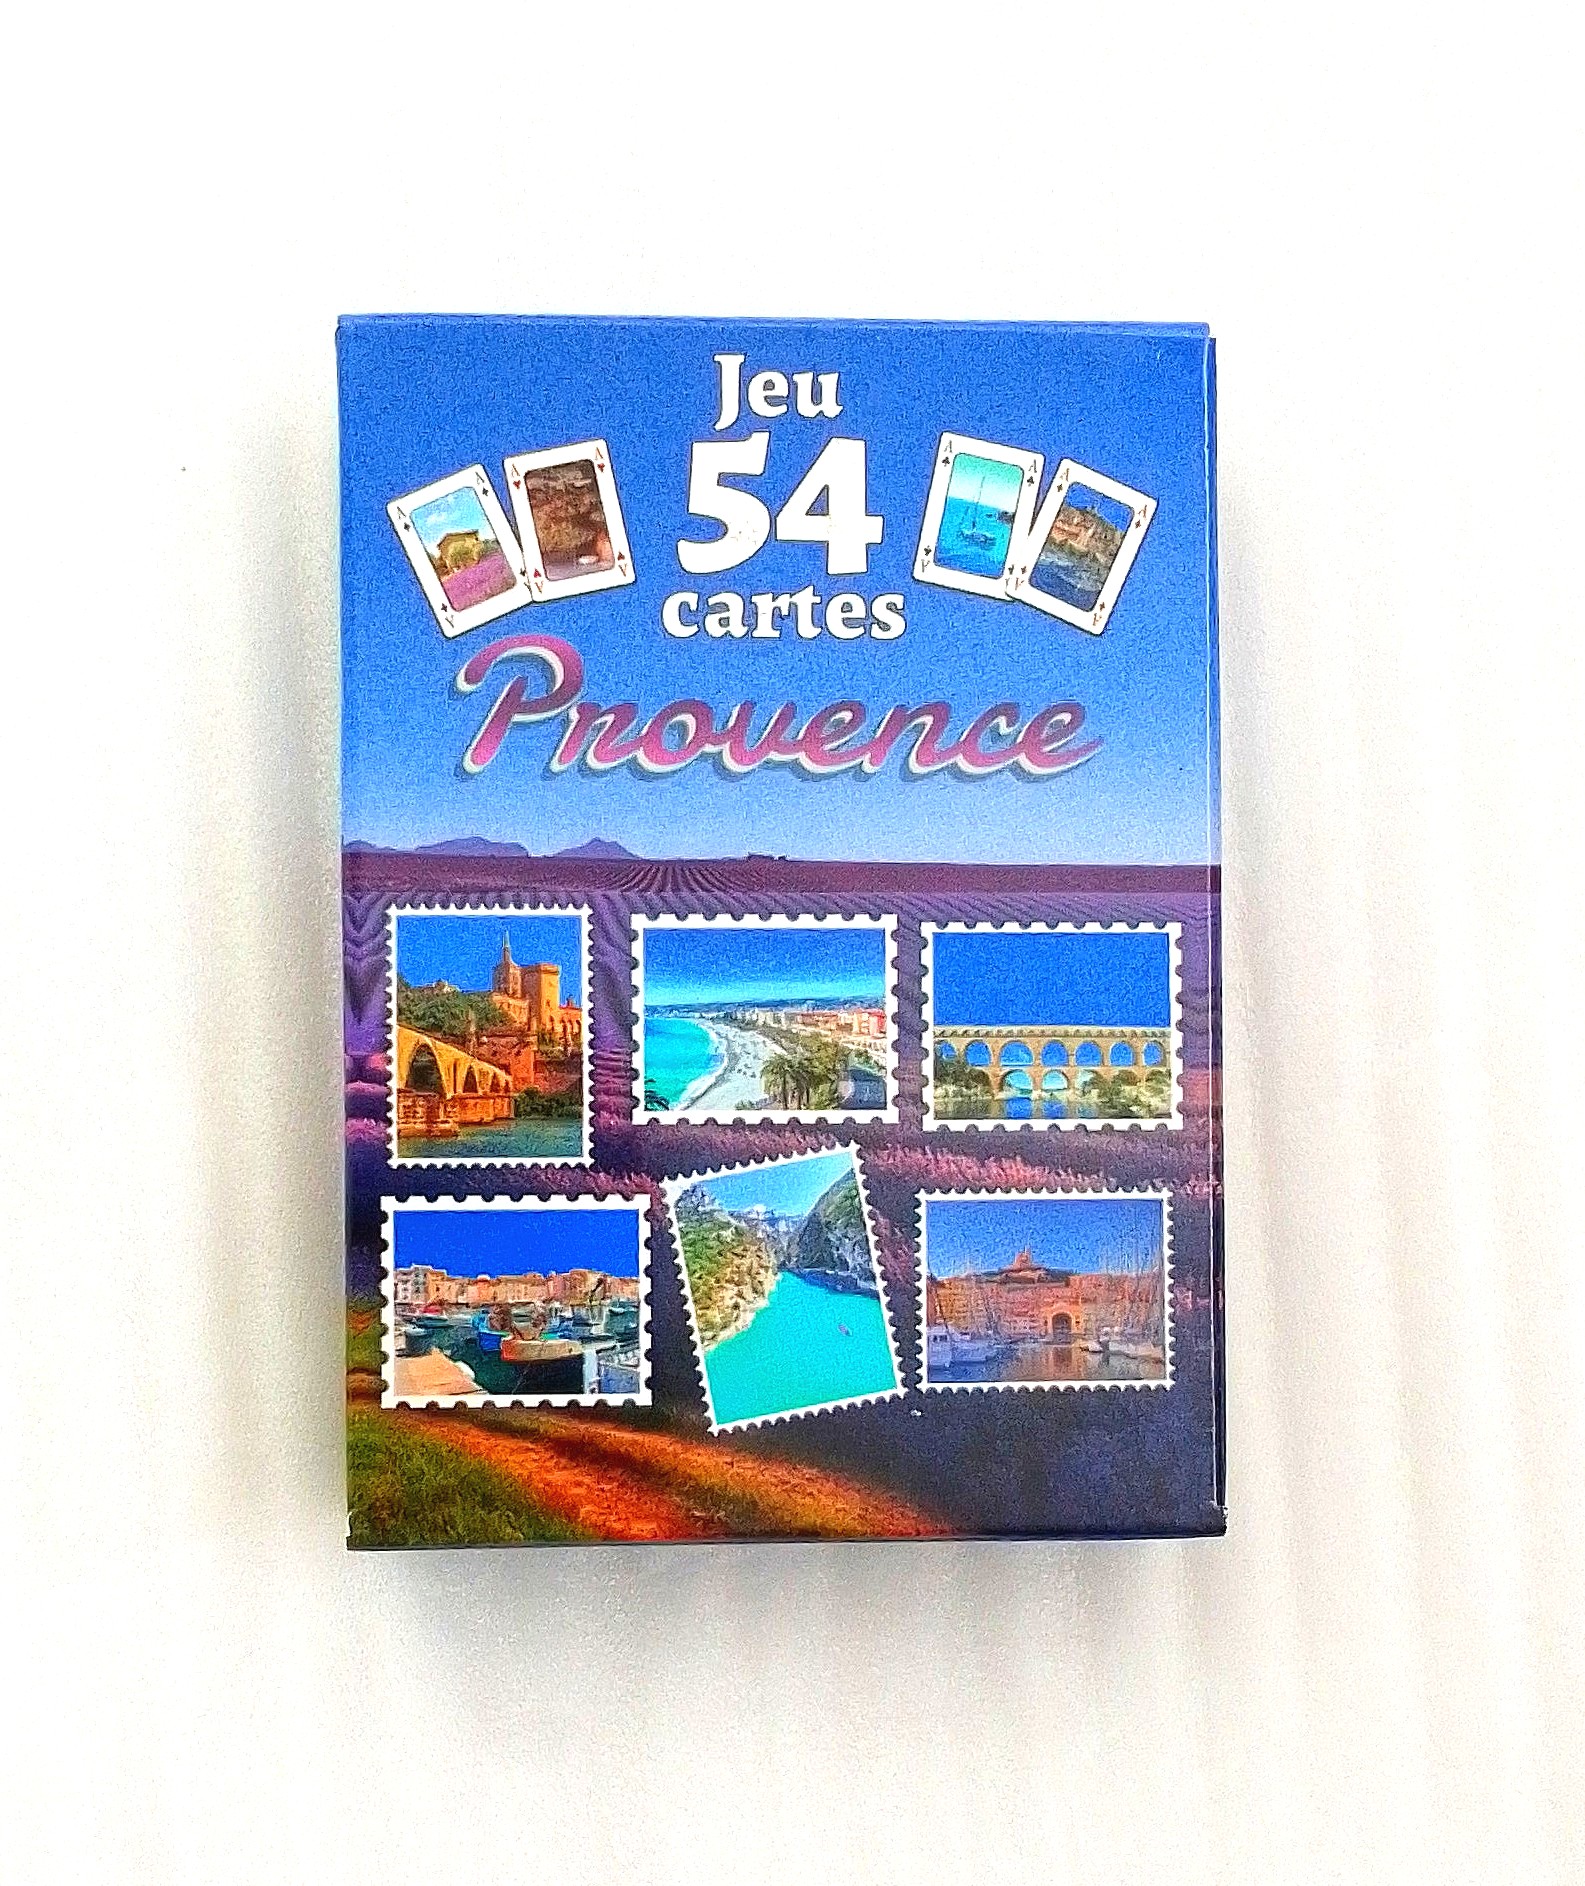 Jeu de cartes – Cote d'azur- villes de la Provence